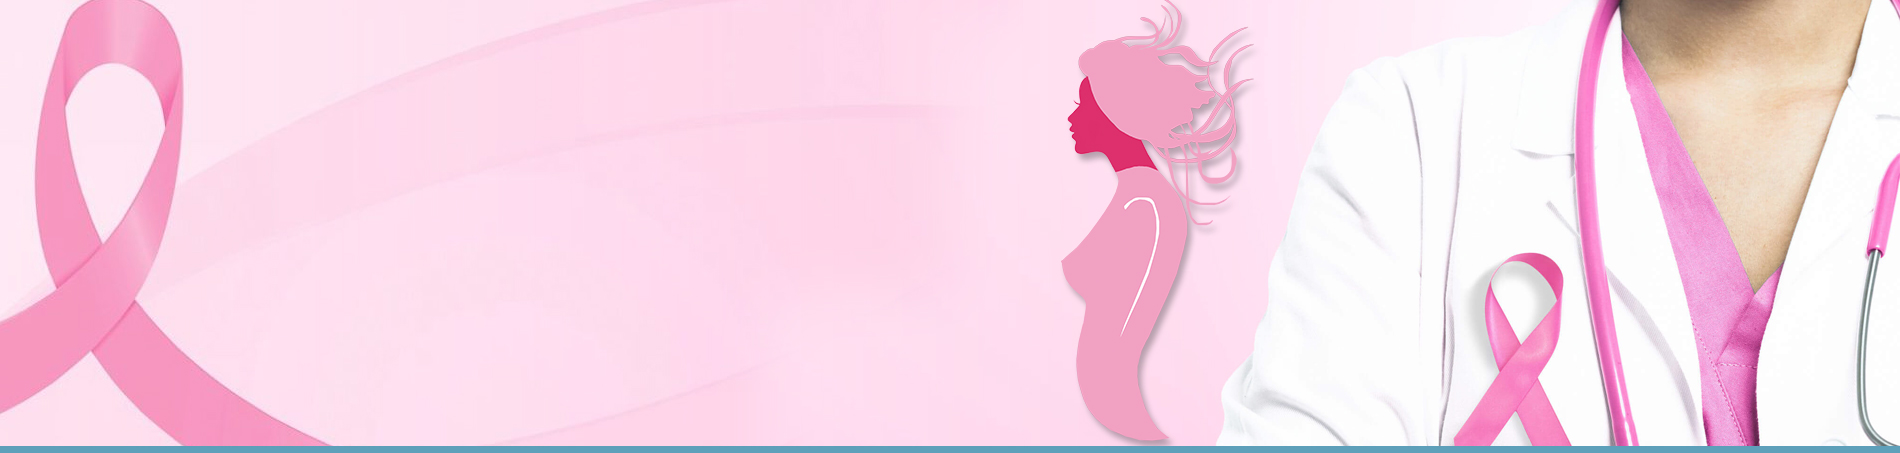 Tumore al seno: prevenzione mammografia